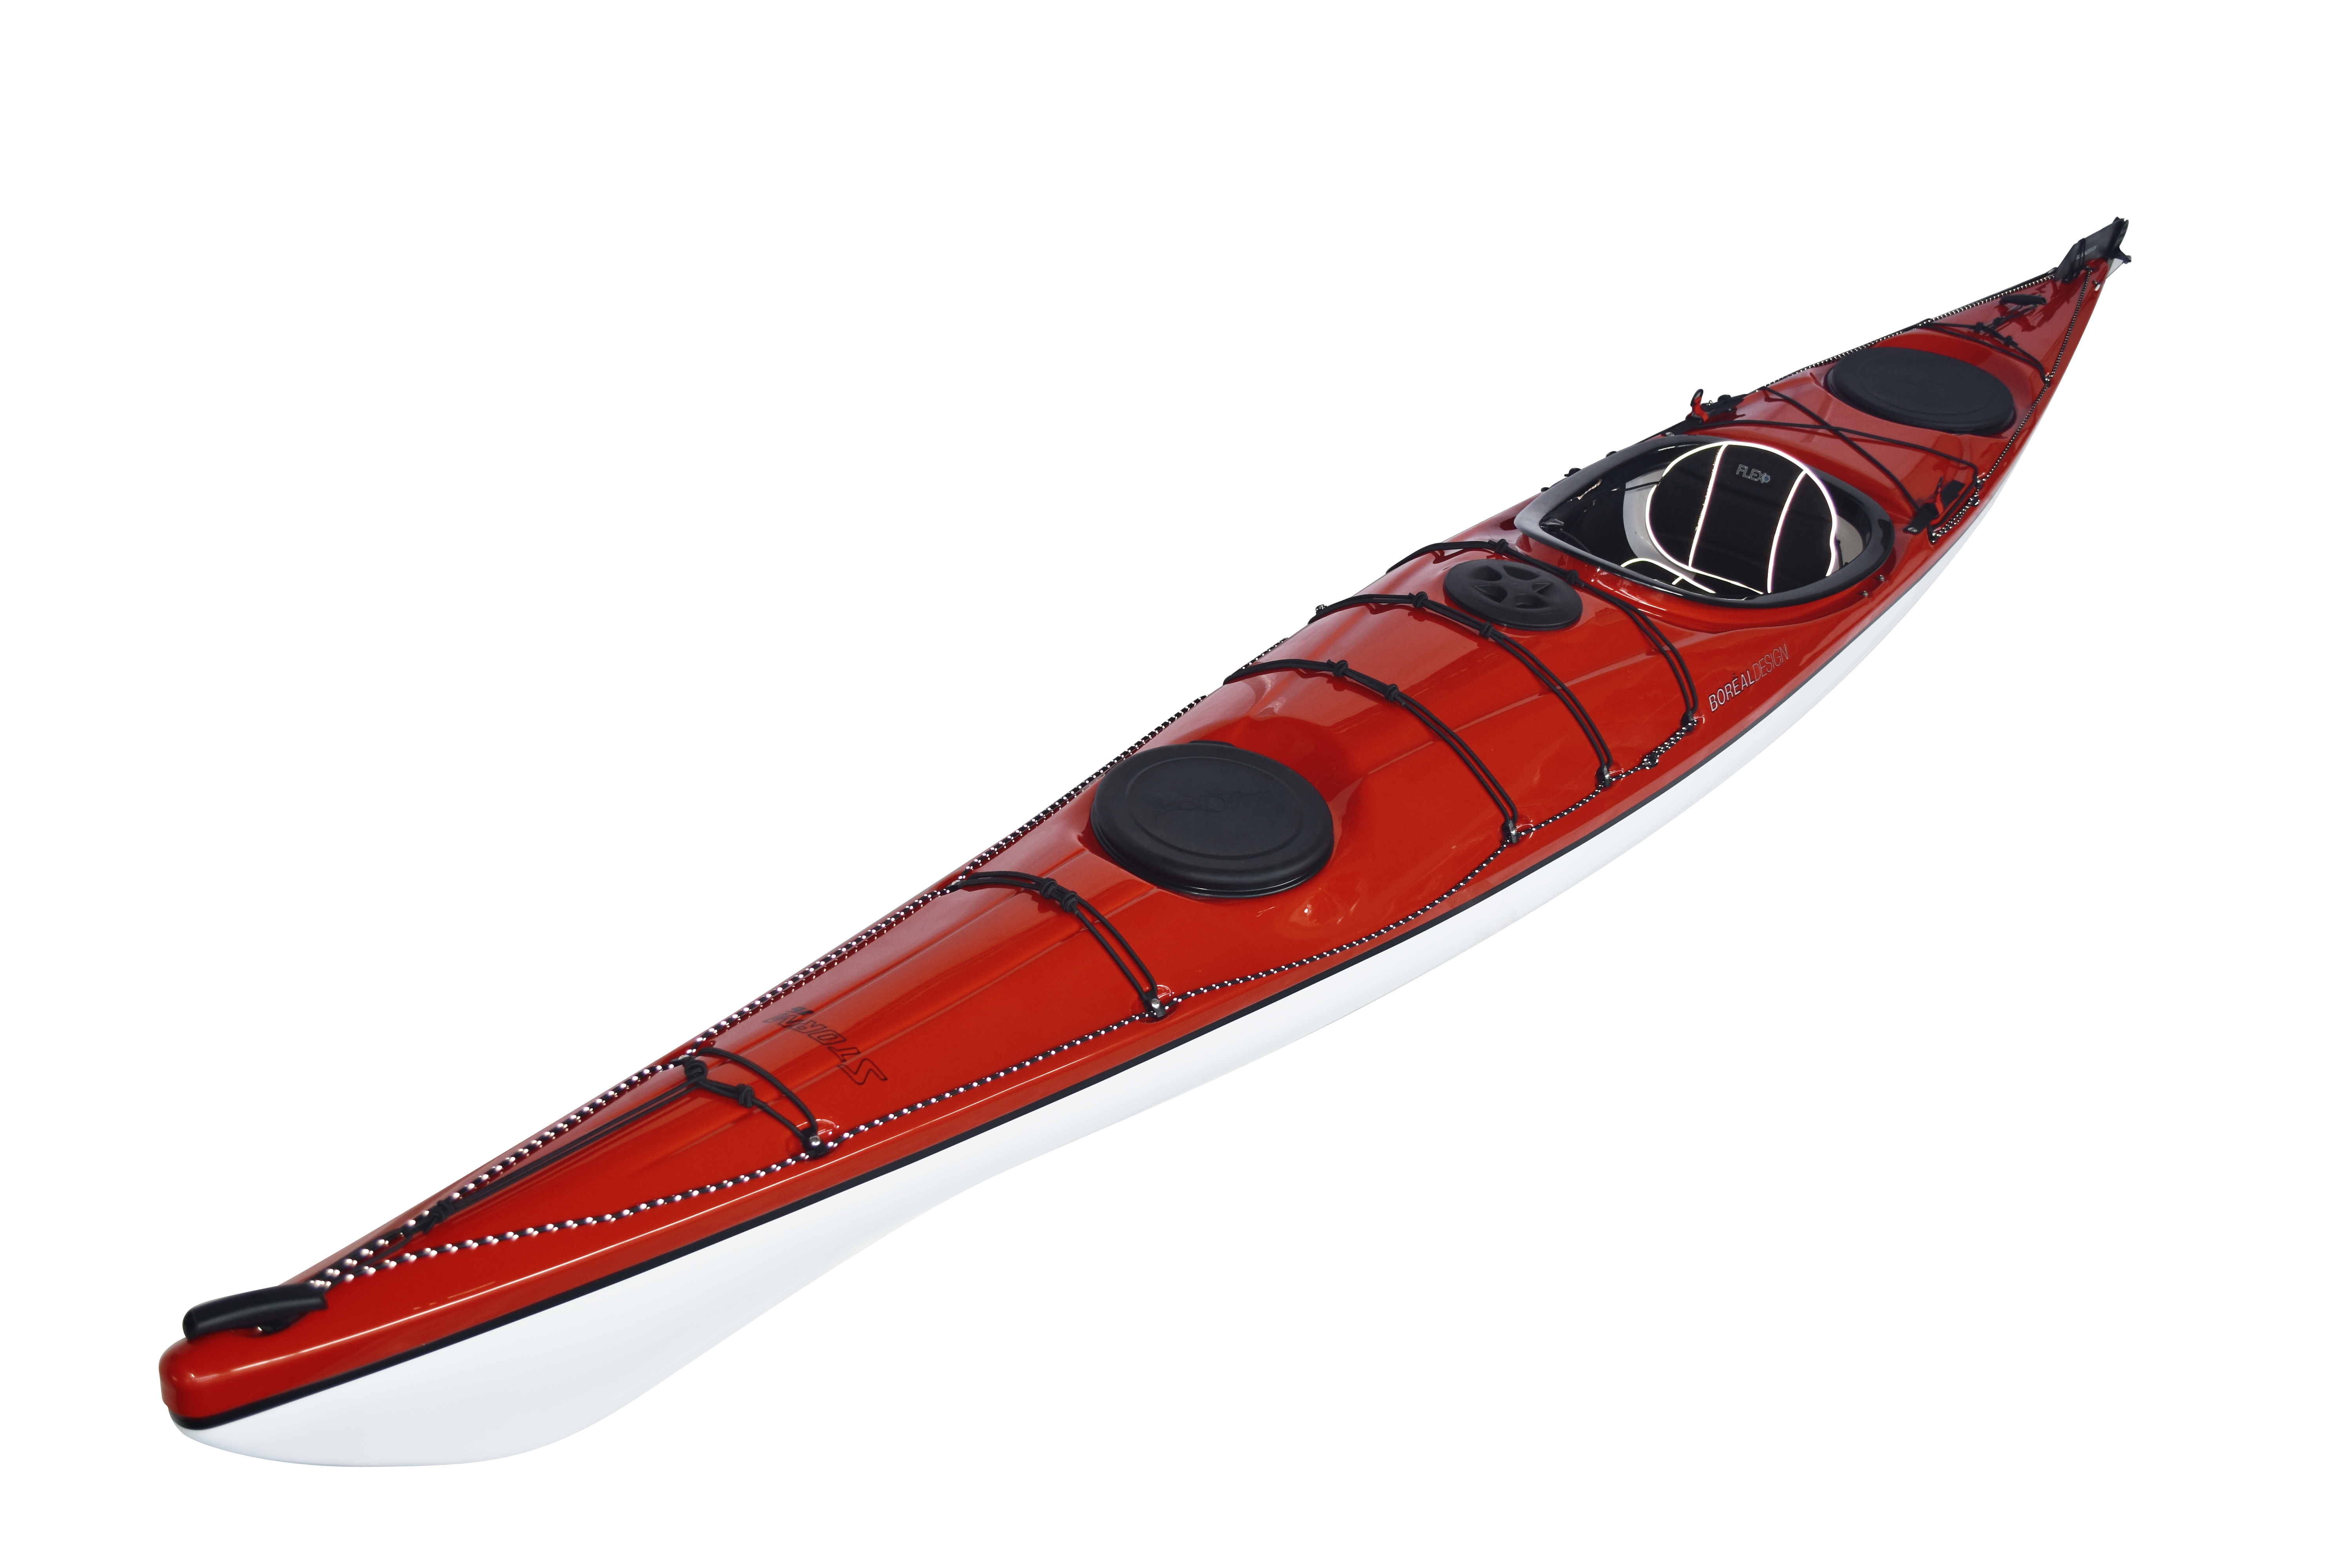 Boreal Design Storm 16 TX Kayak- ULTRALIGHT